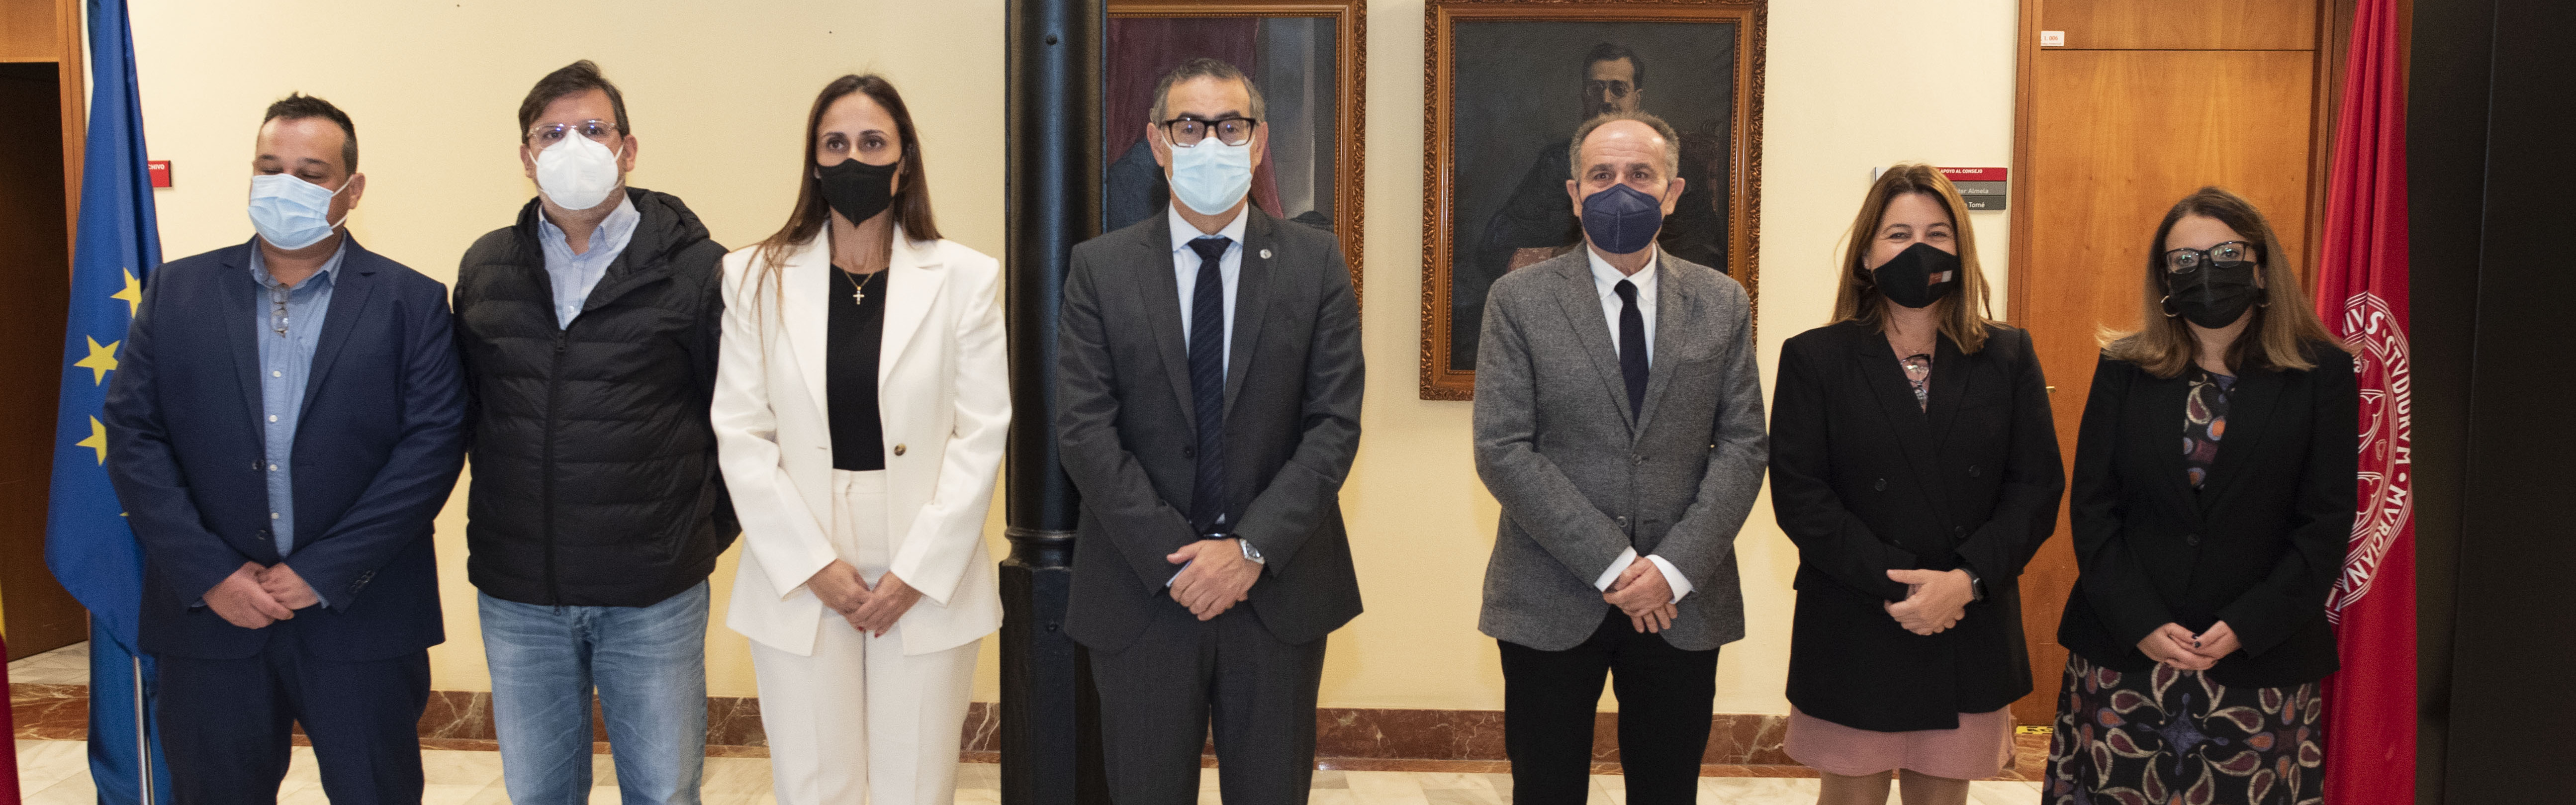 Nota de prensa - Nace la Cátedra de Cirugía e Implantología Bucal Experimental Galimplant de la Universidad de Murcia